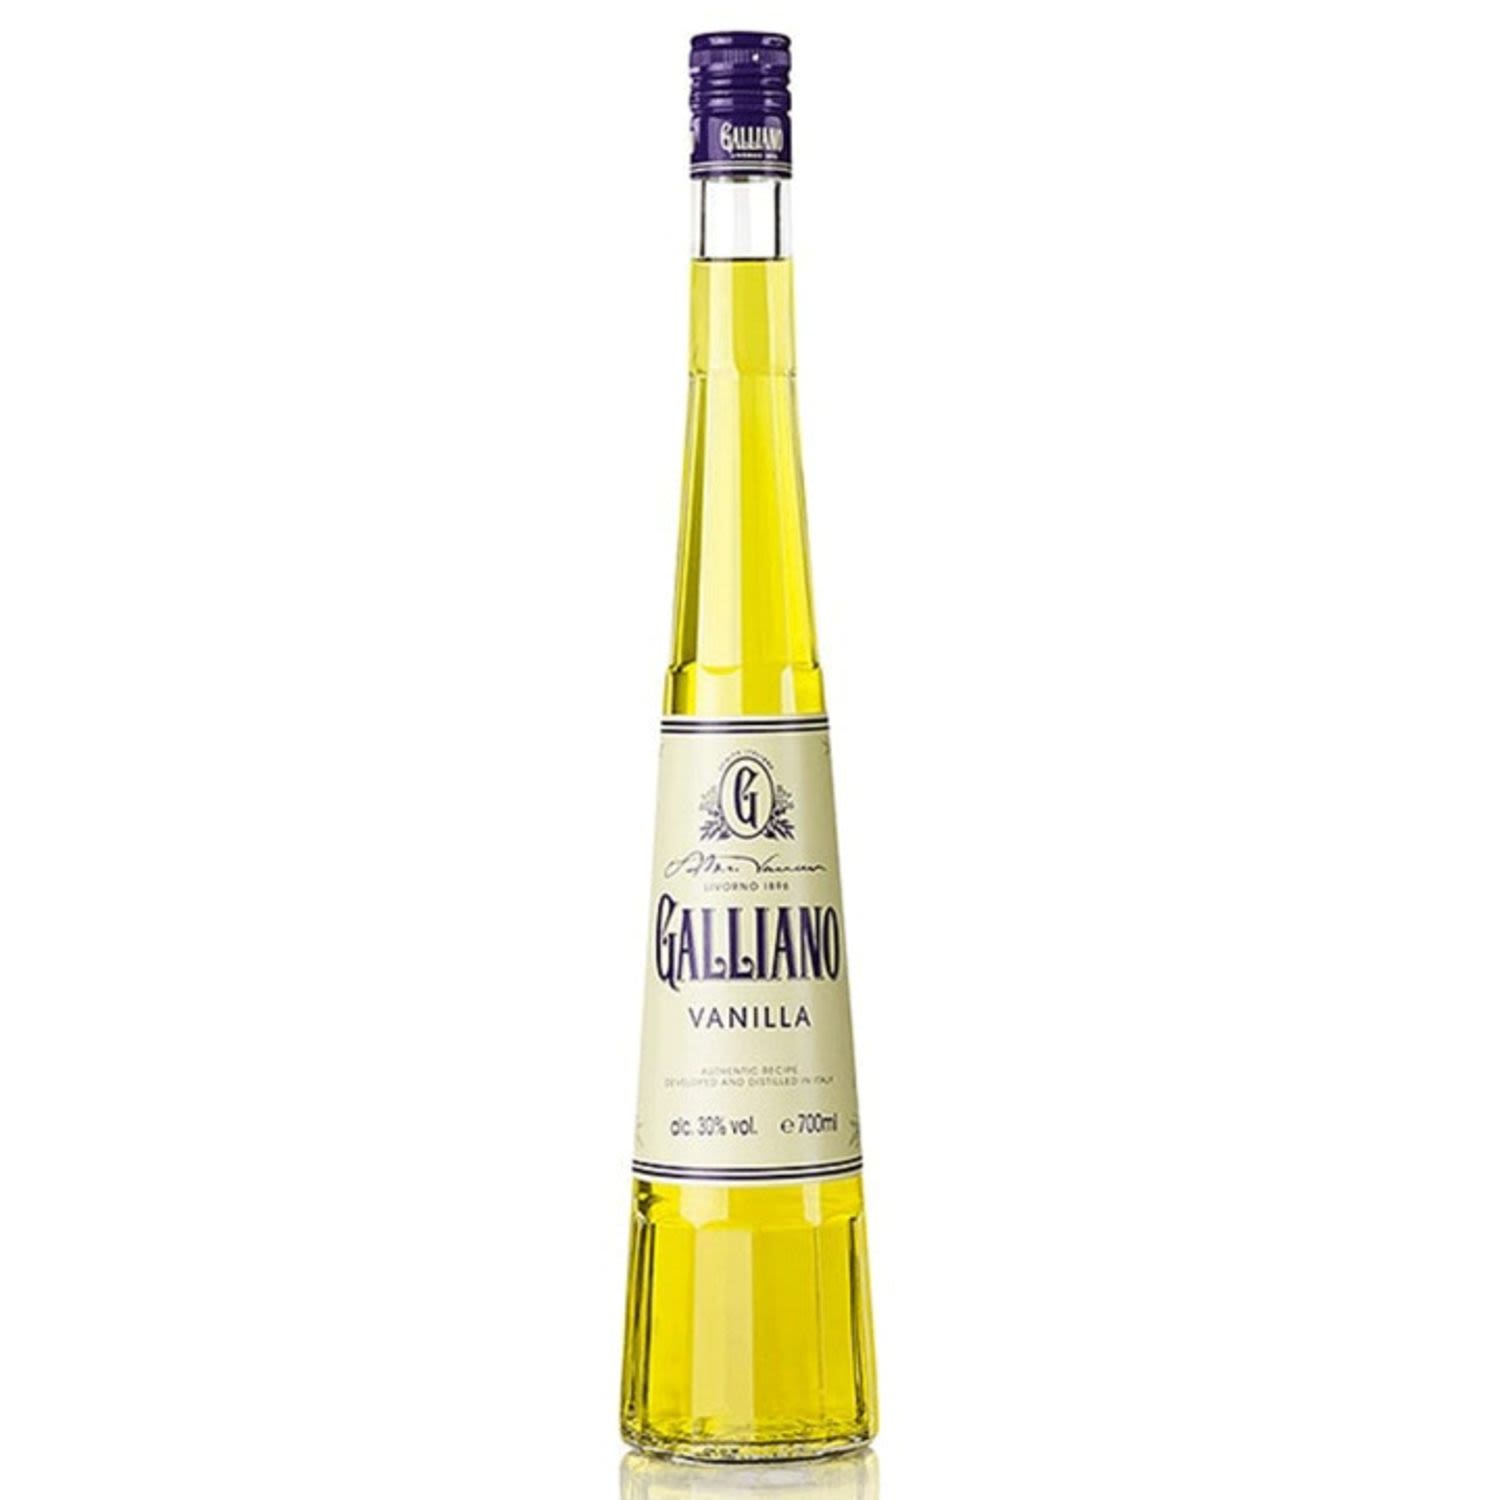 Galliano Vanilla Liquore 700mL 6 Pack